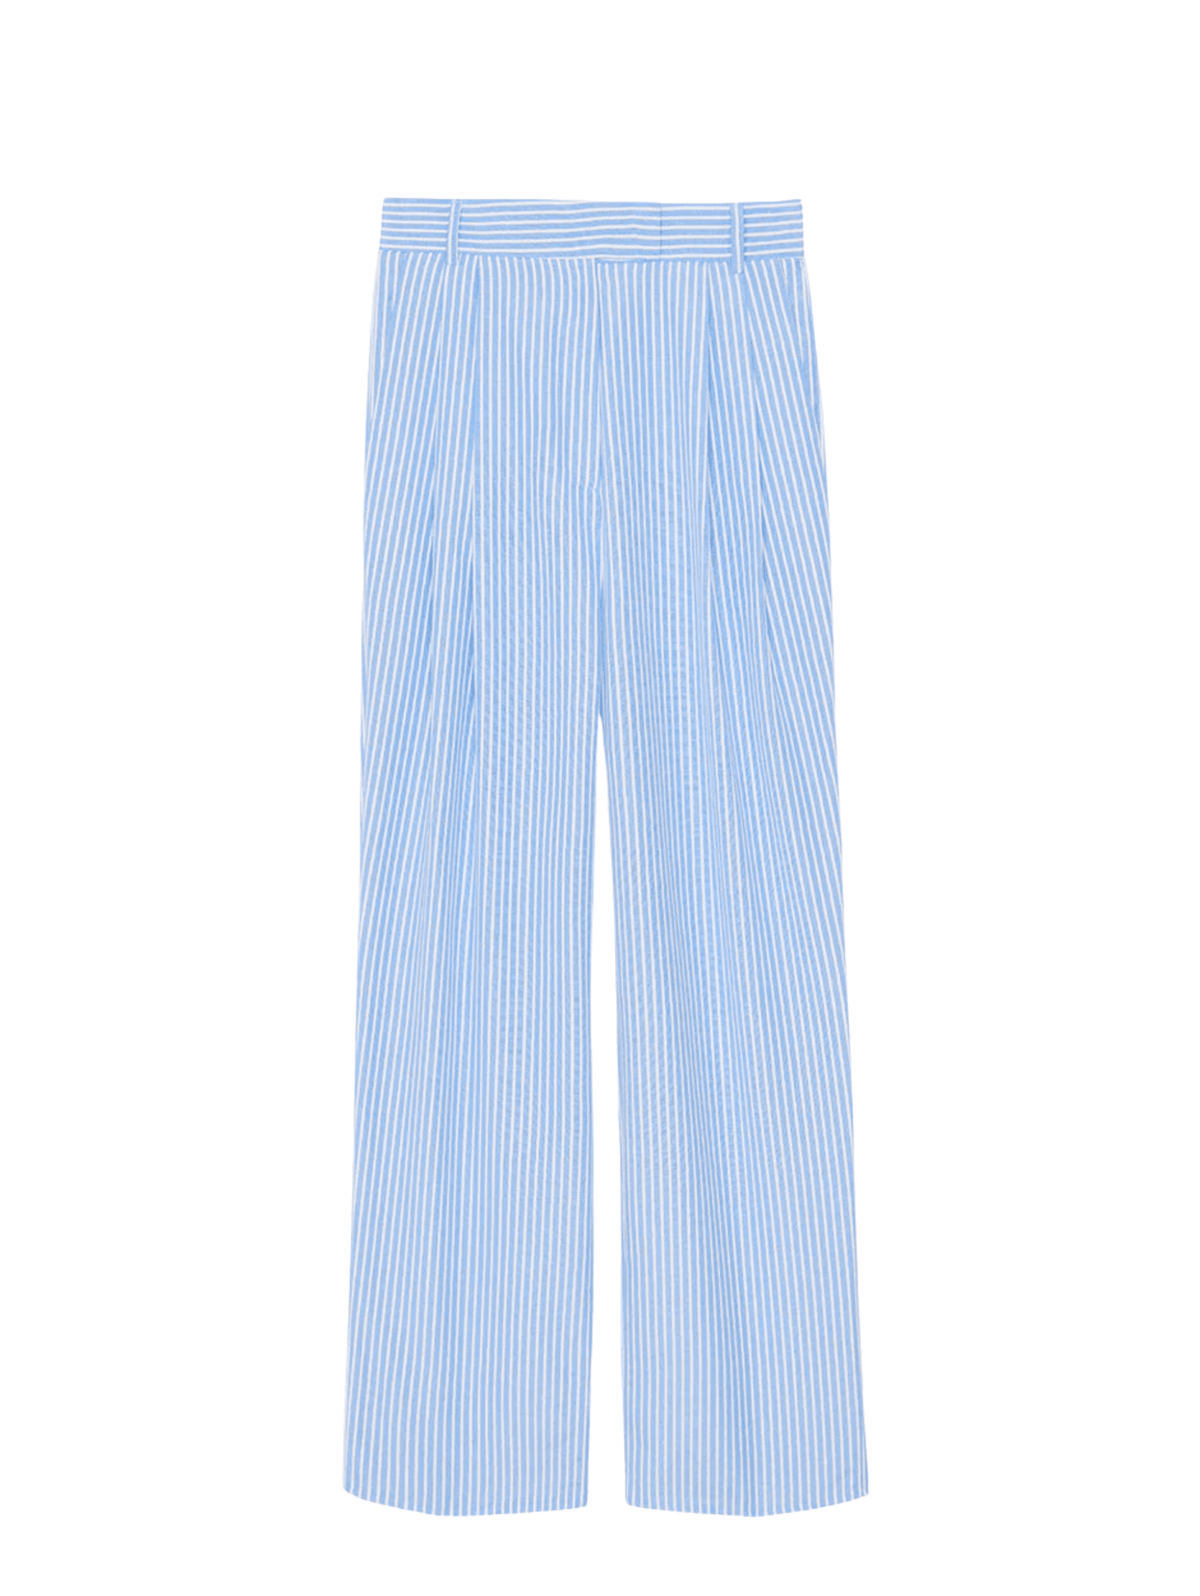 Bea Stripe Suit Pants / Light Blue &amp; White Archive Frankie Shop 